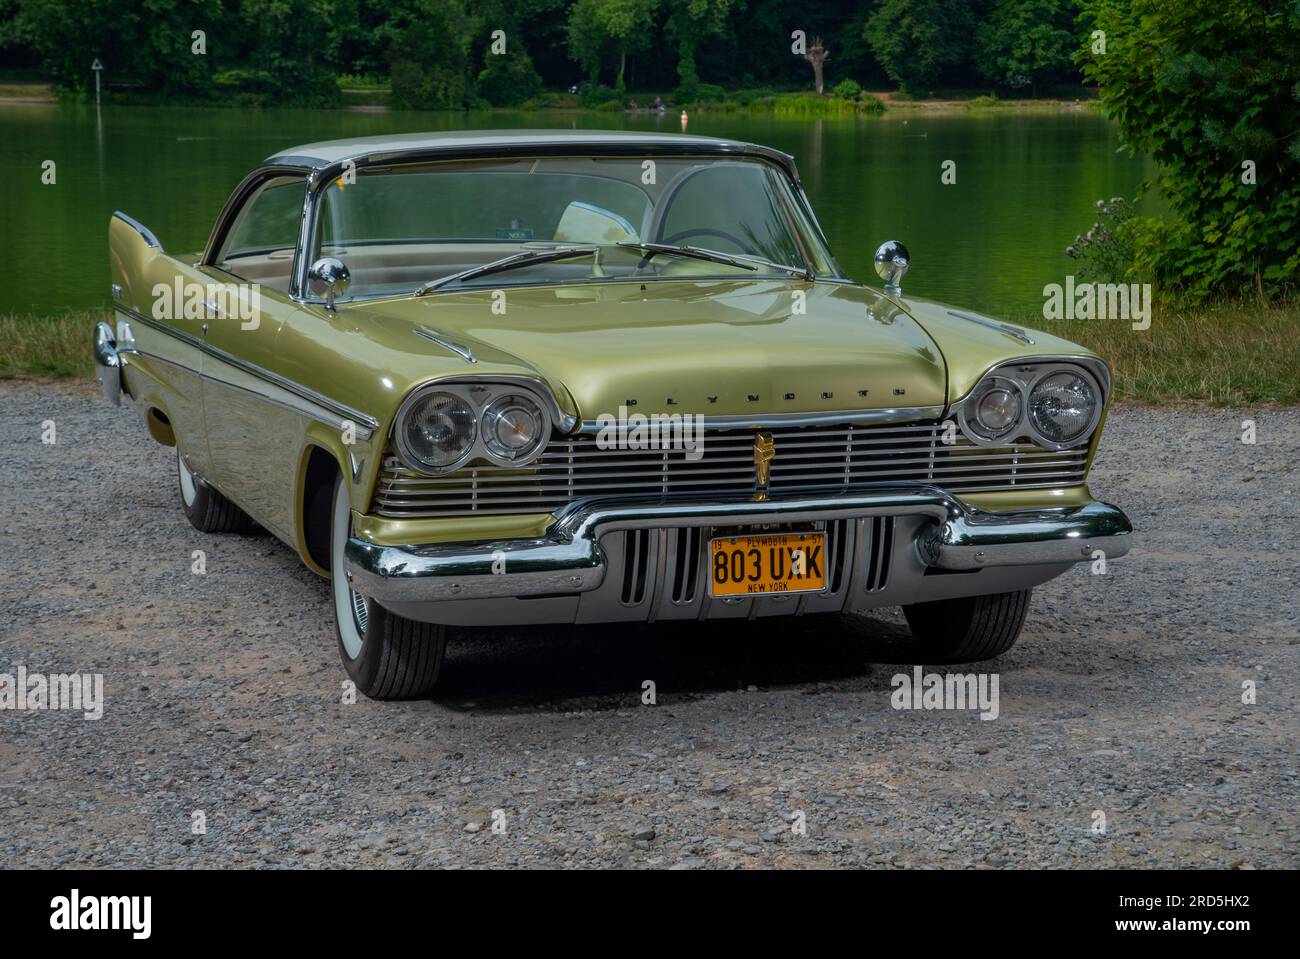 1957 Plymouth Belvedere, classica auto familiare americana "full size" Foto Stock